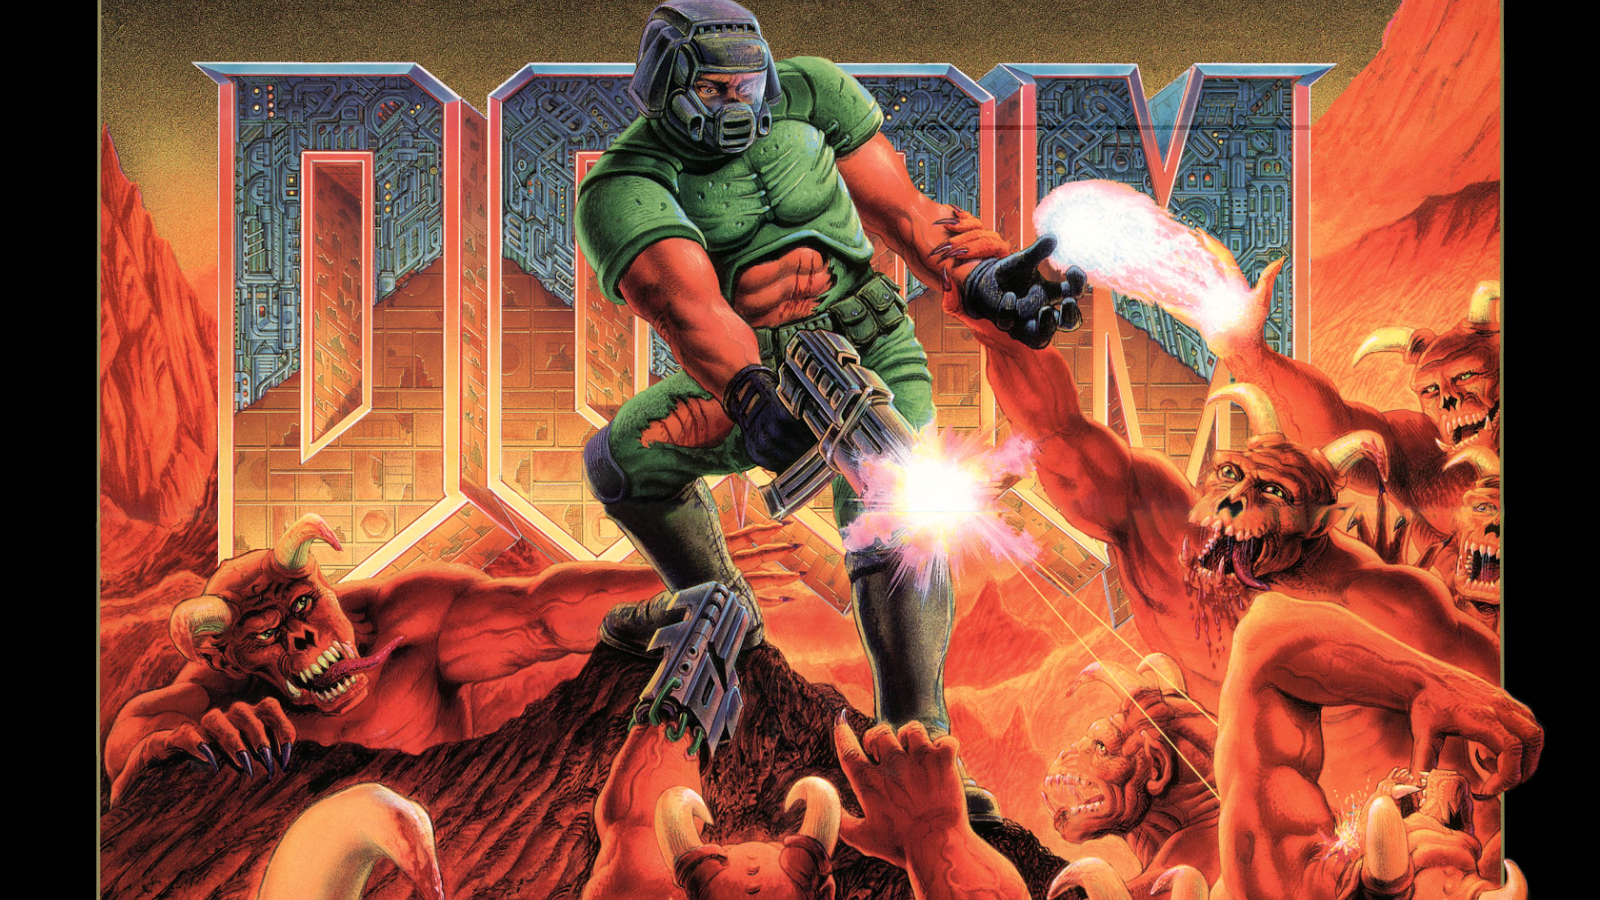 Bethesda já disponibilizou os jogos Doom na Google Play Store